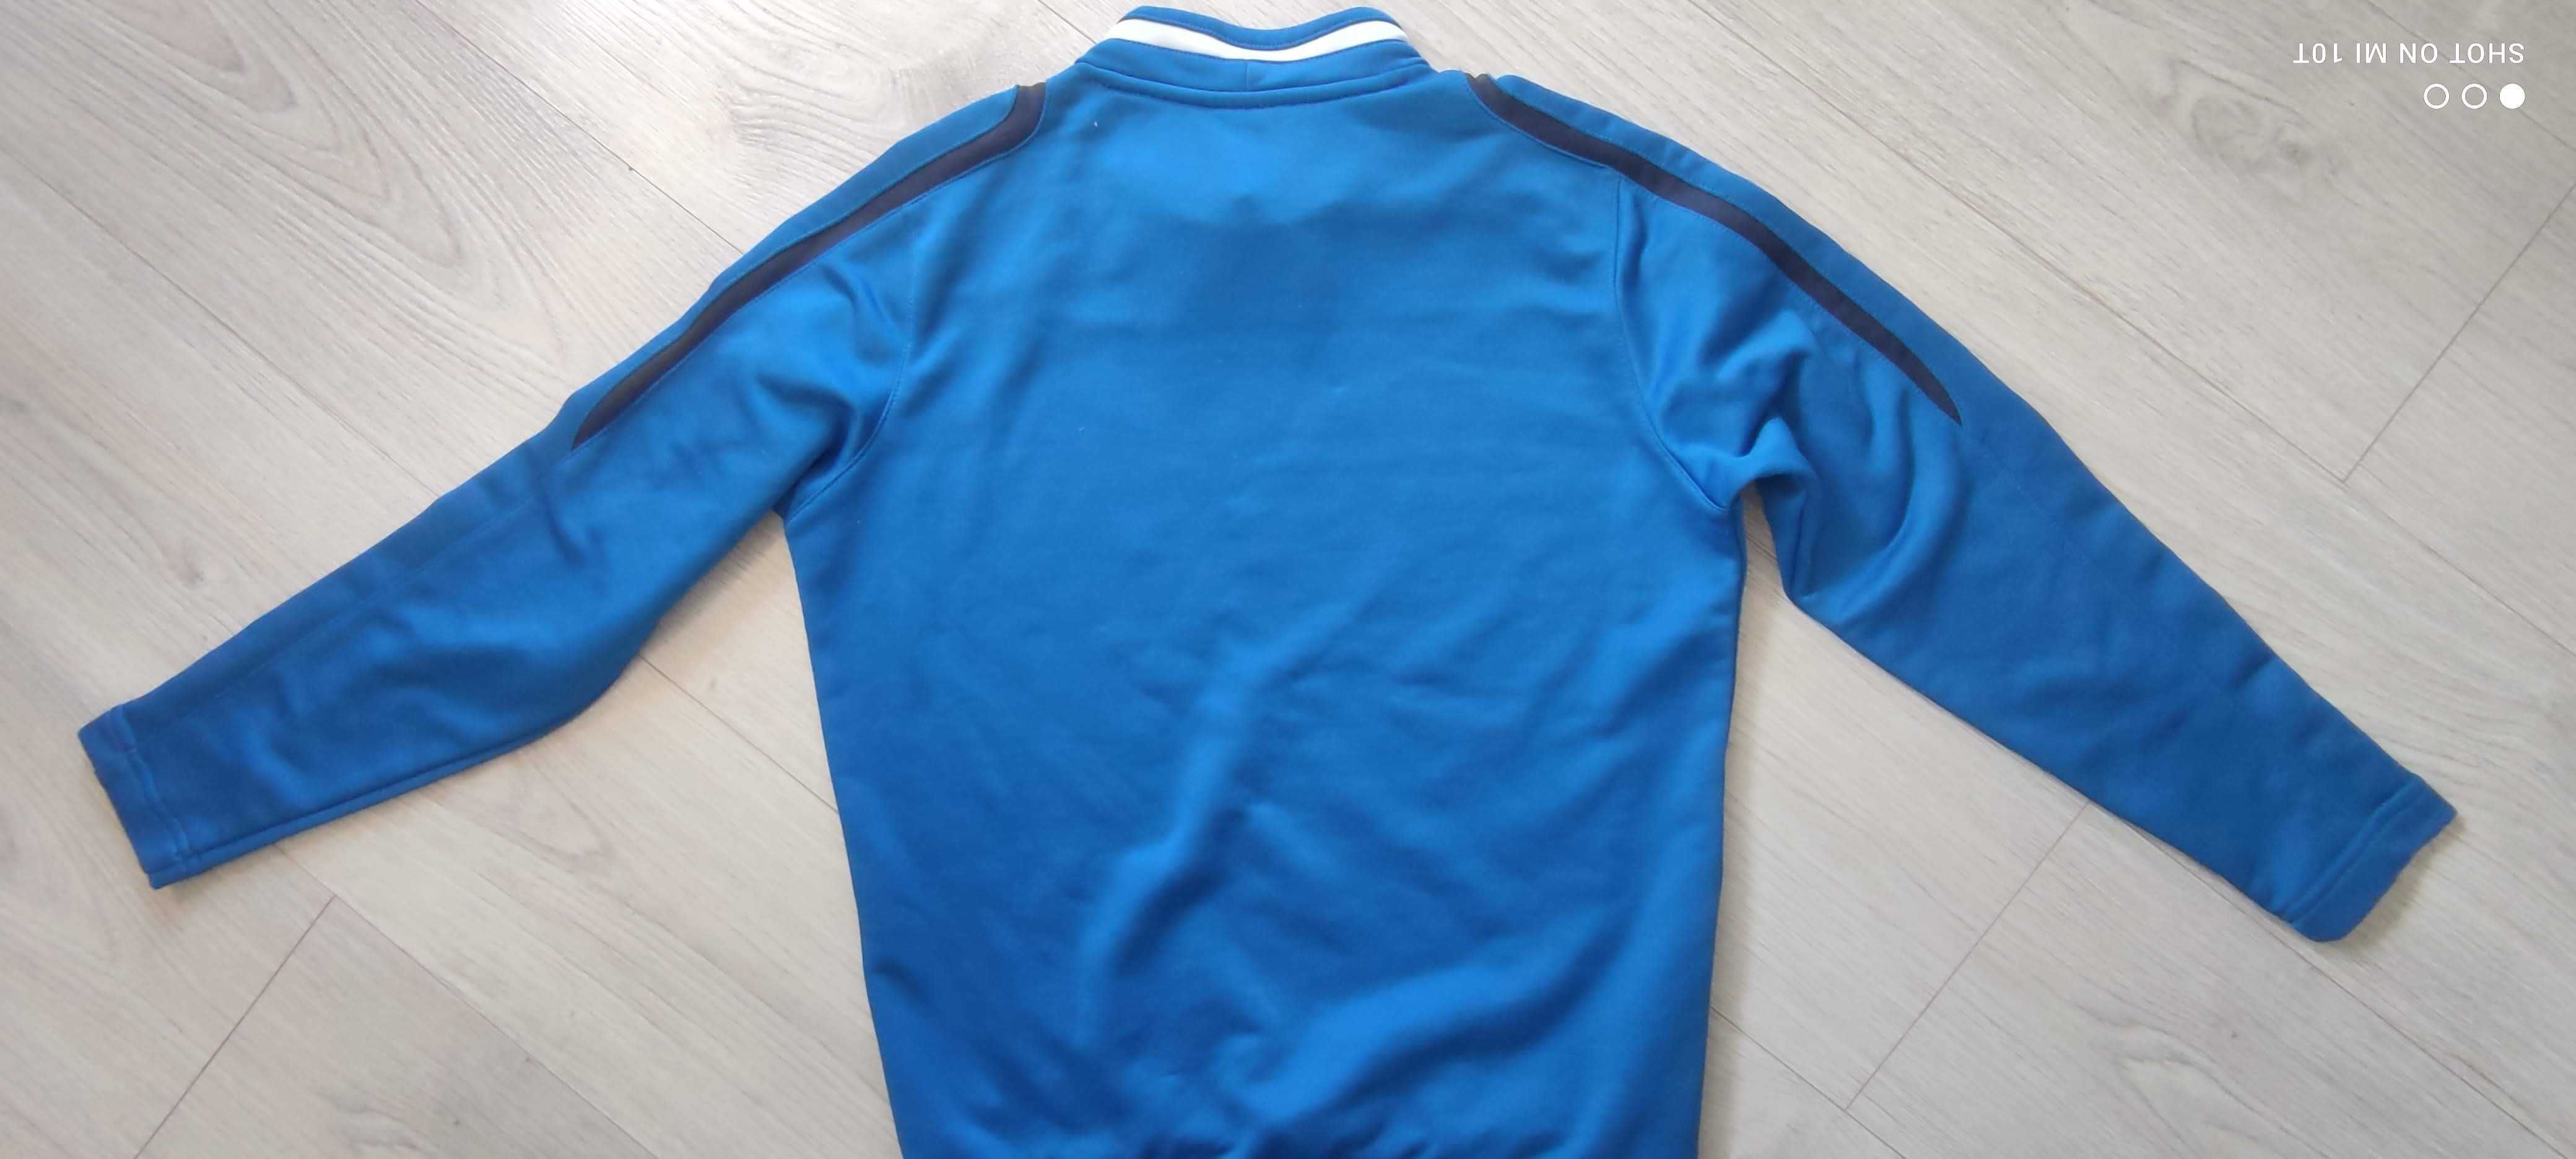 koszulka T-shirt bluza sportowa JAKO LECH POZNAŃ Kolejorz r 152